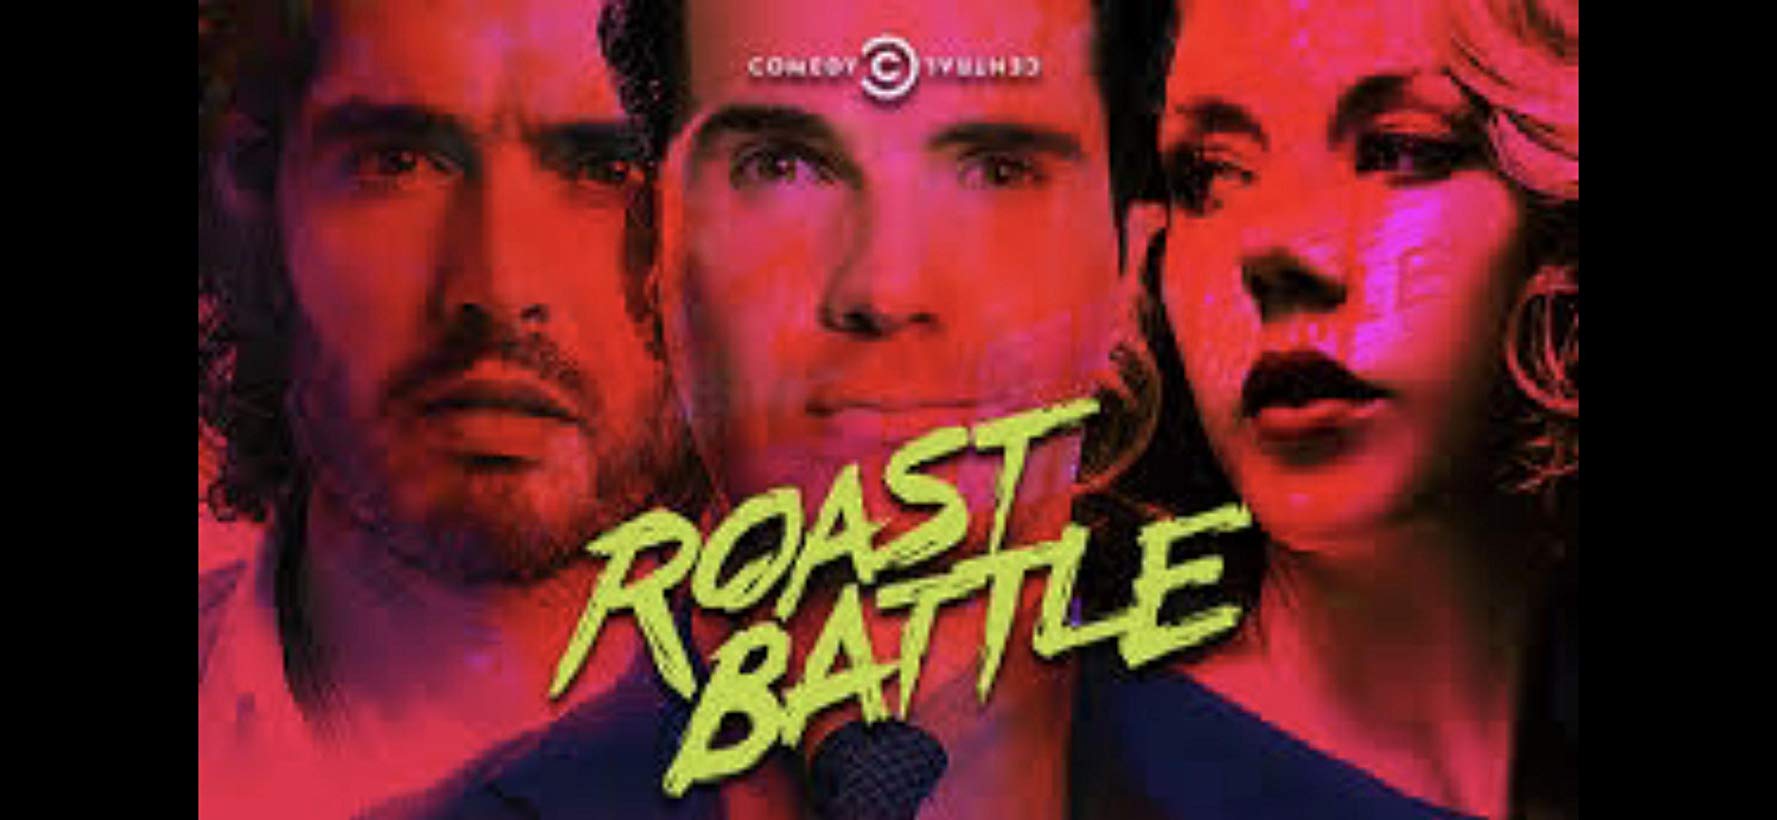 Watch Roast Battle - Season 2